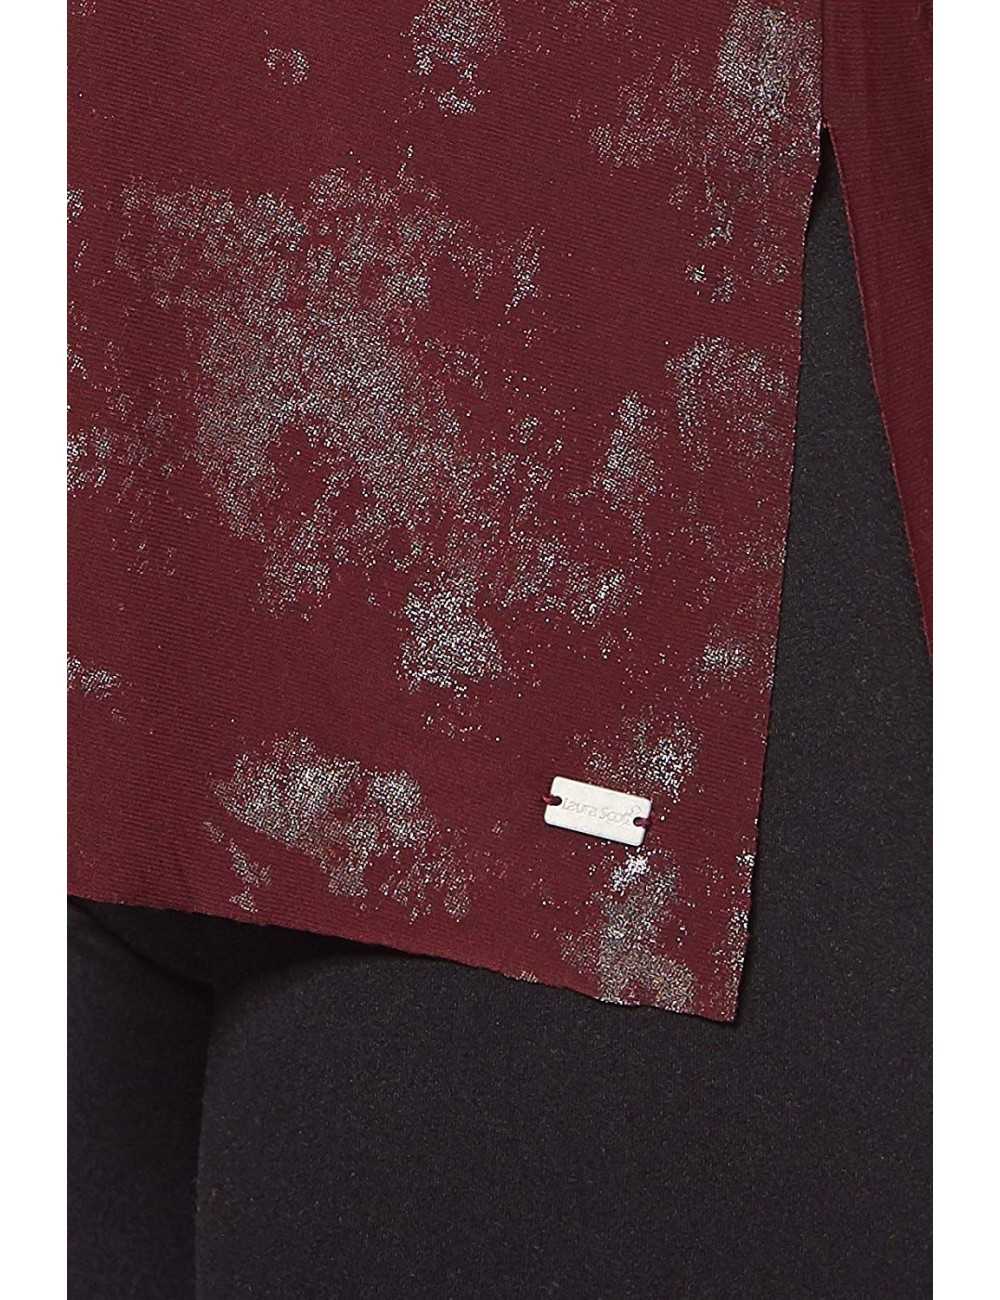 Maglia Donna Laura Scott rossa con stampa metallica